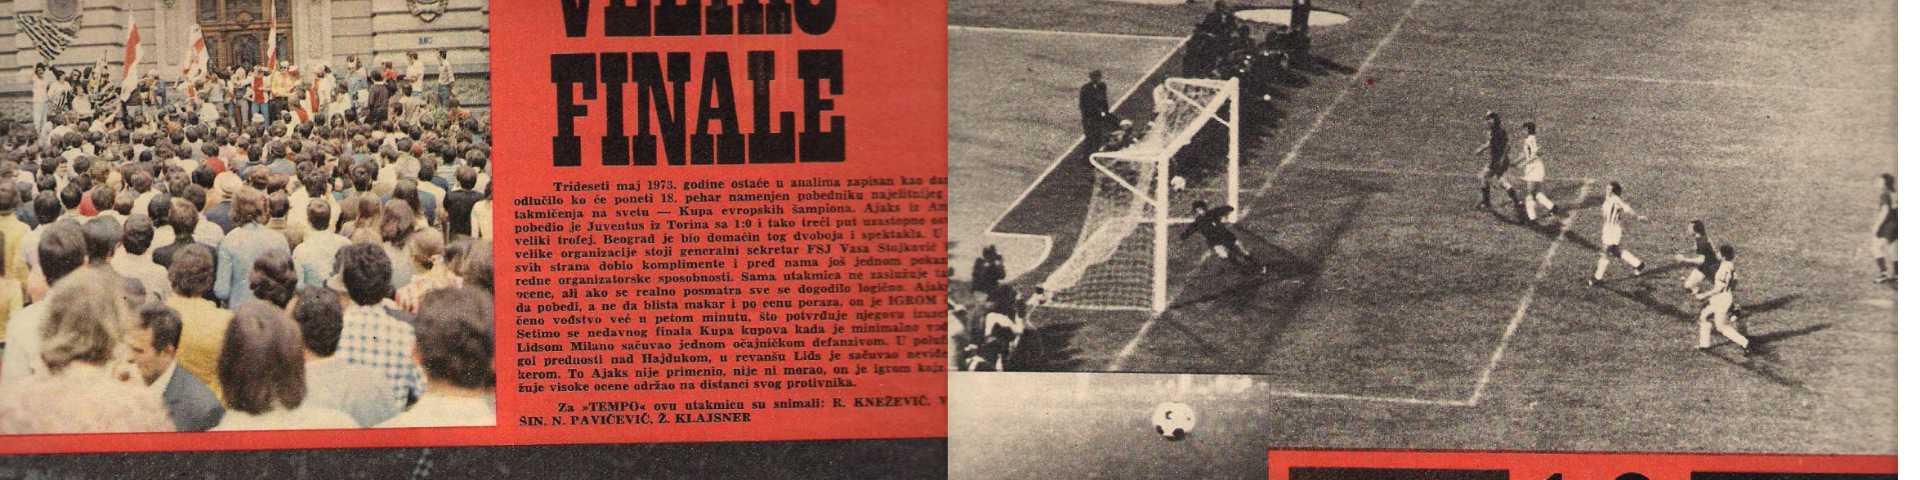 Било једном у Београду: Финале Купа европских шампиона у фудбалу 1973.